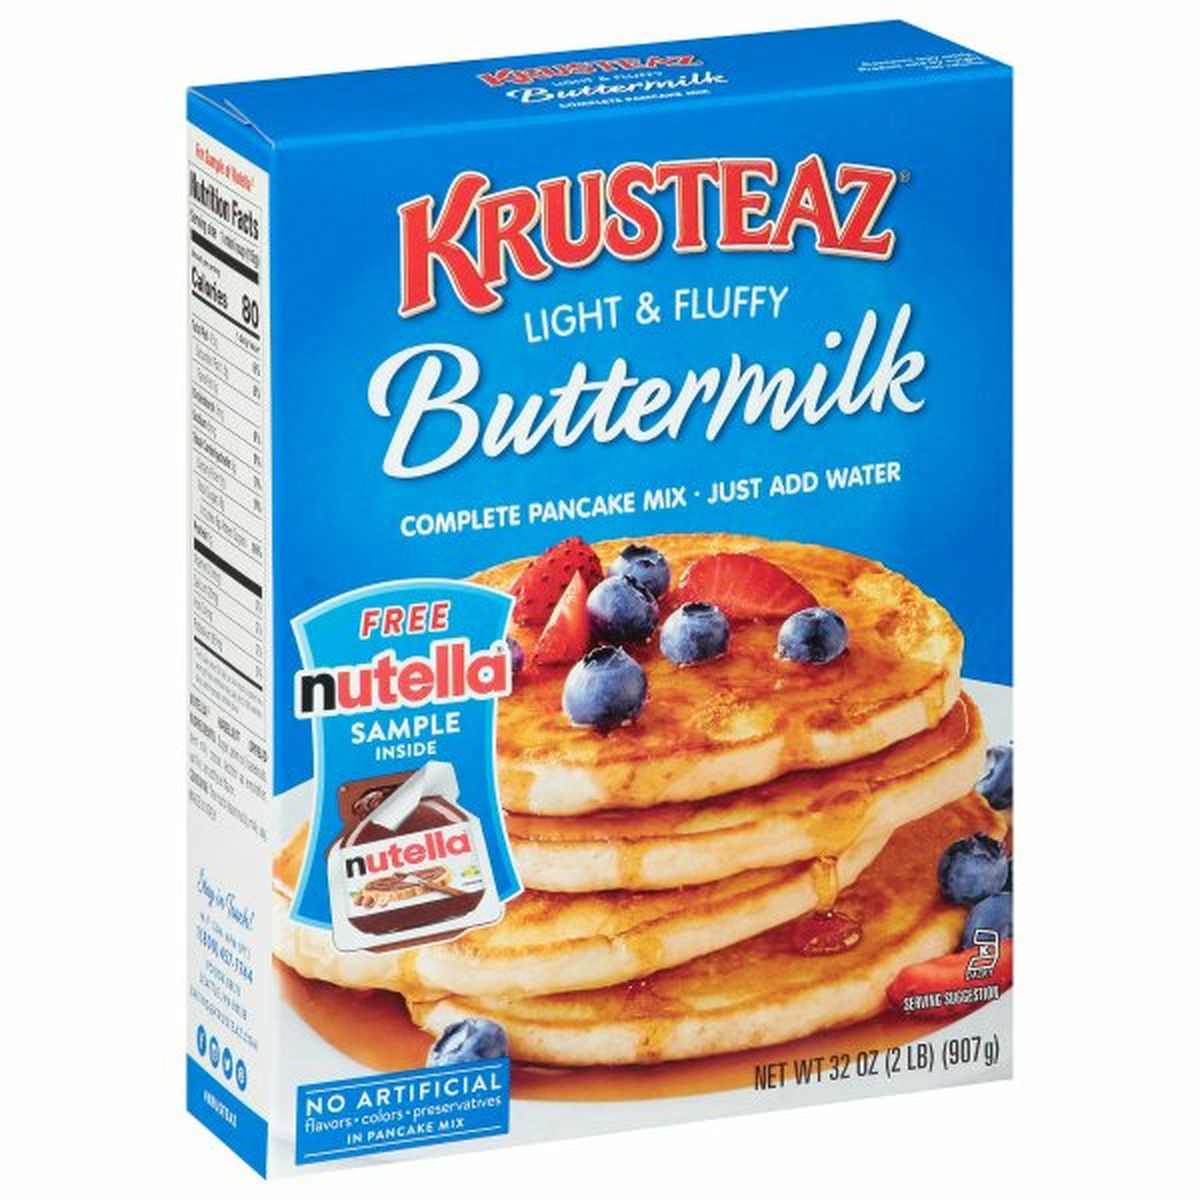 Calories in Krusteaz Pancake Mix, Buttermilk, Light & Fluffy